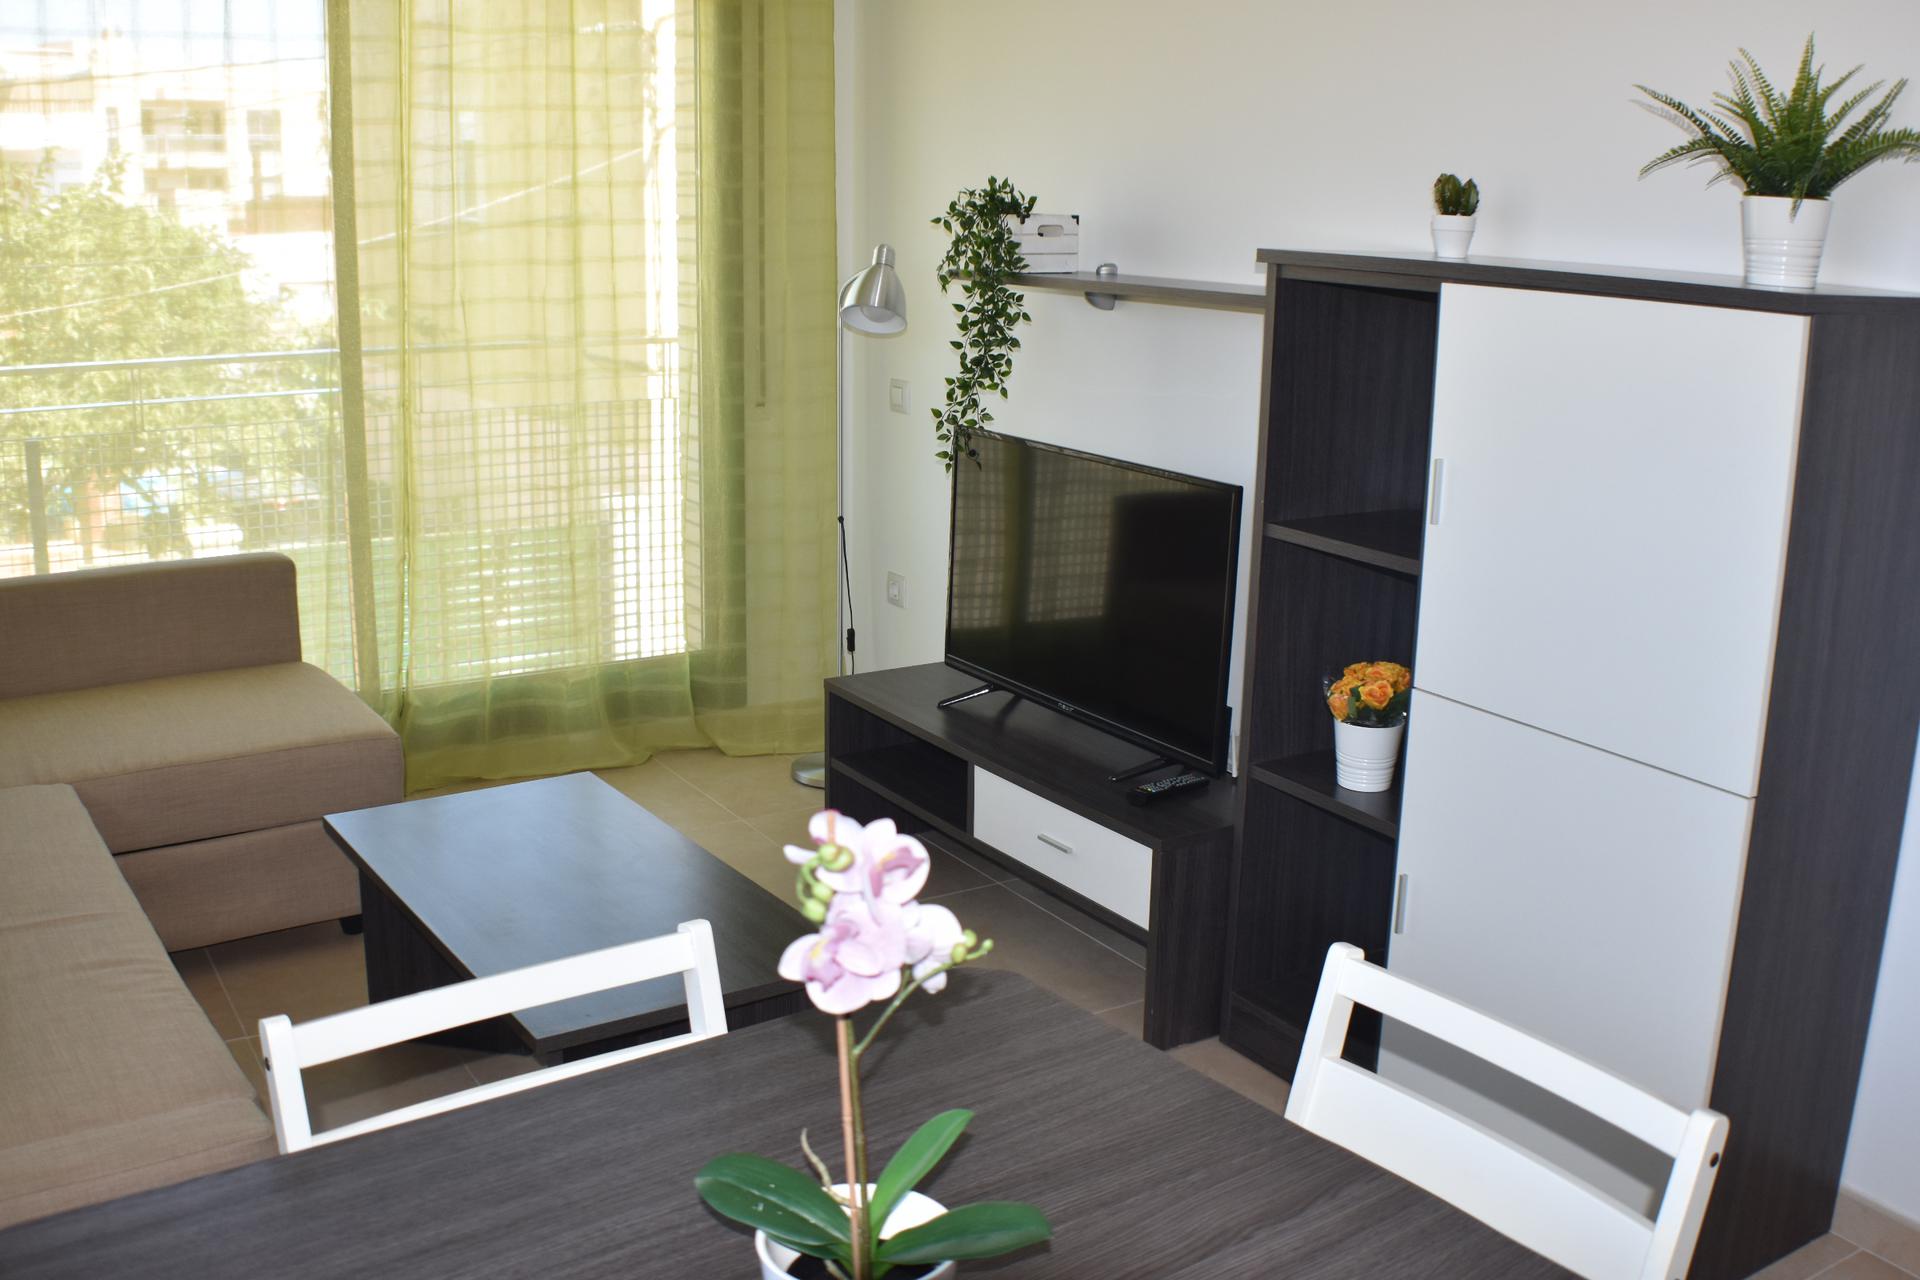 Apartament - Deltebre - 2 dormitoris - 4 ocupants